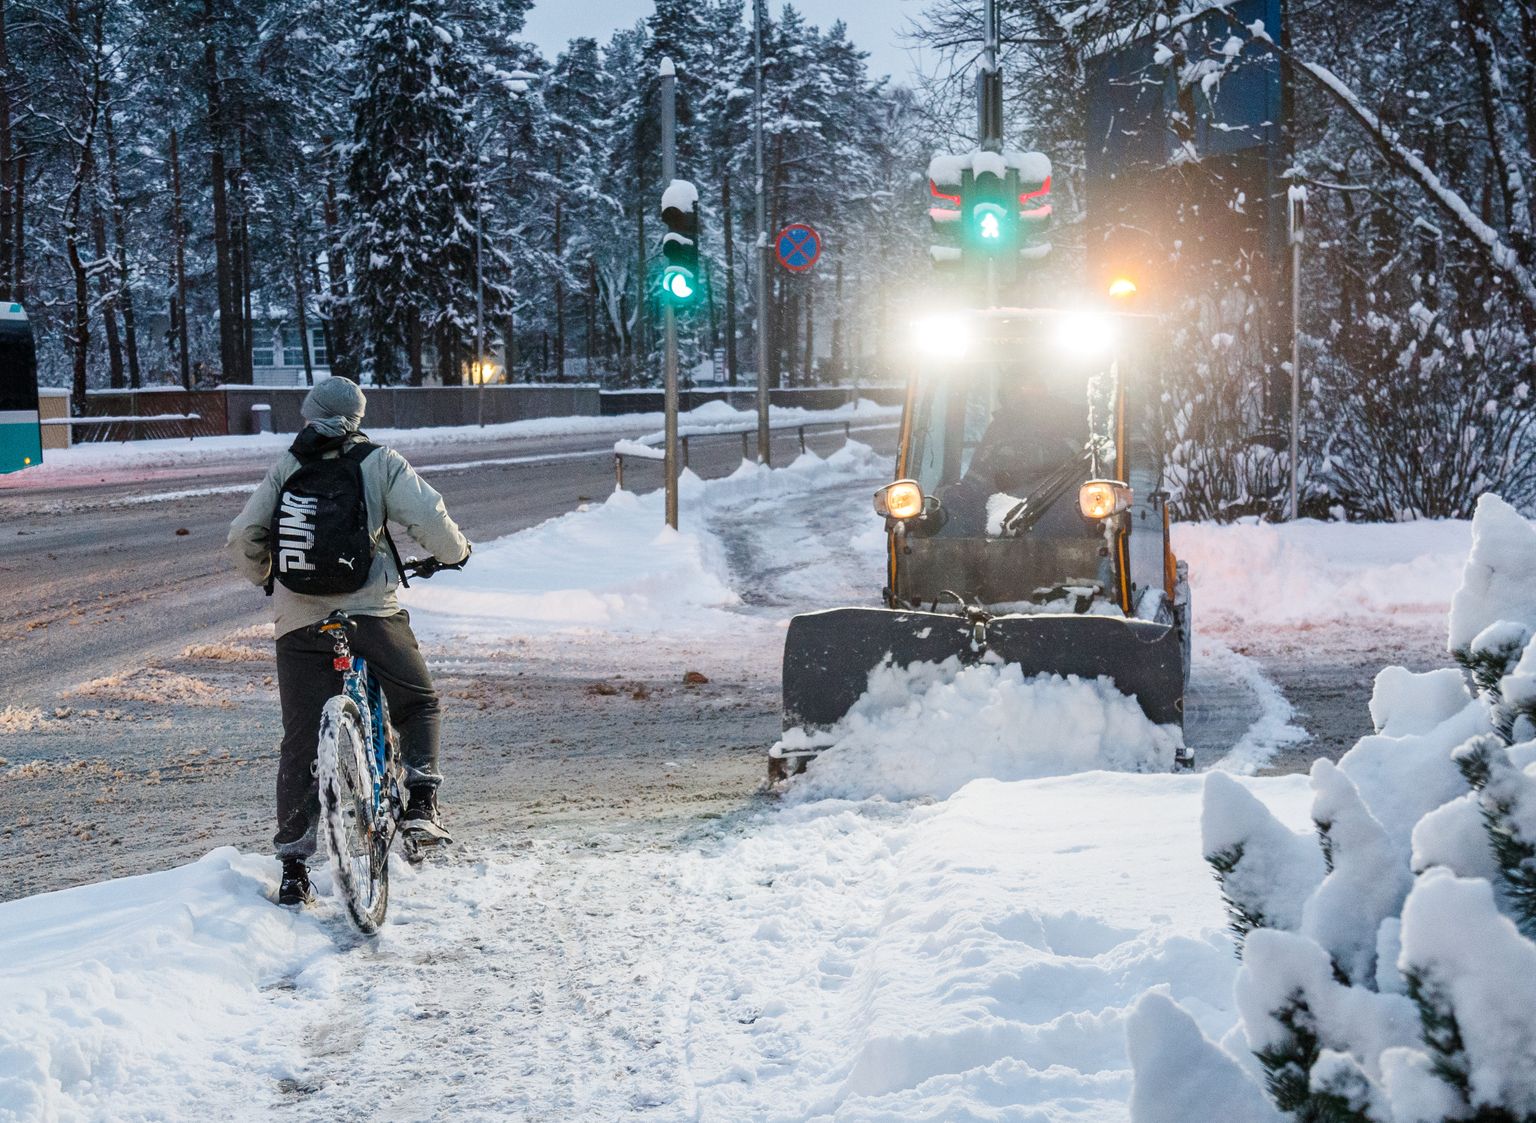 04.12.2021, Tallinn
Talv. Lumi. Kõnniteede puhastamine väikese lumesahaga Vabaduse puiesteel
Foto Mihkel Maripuu, Postimees